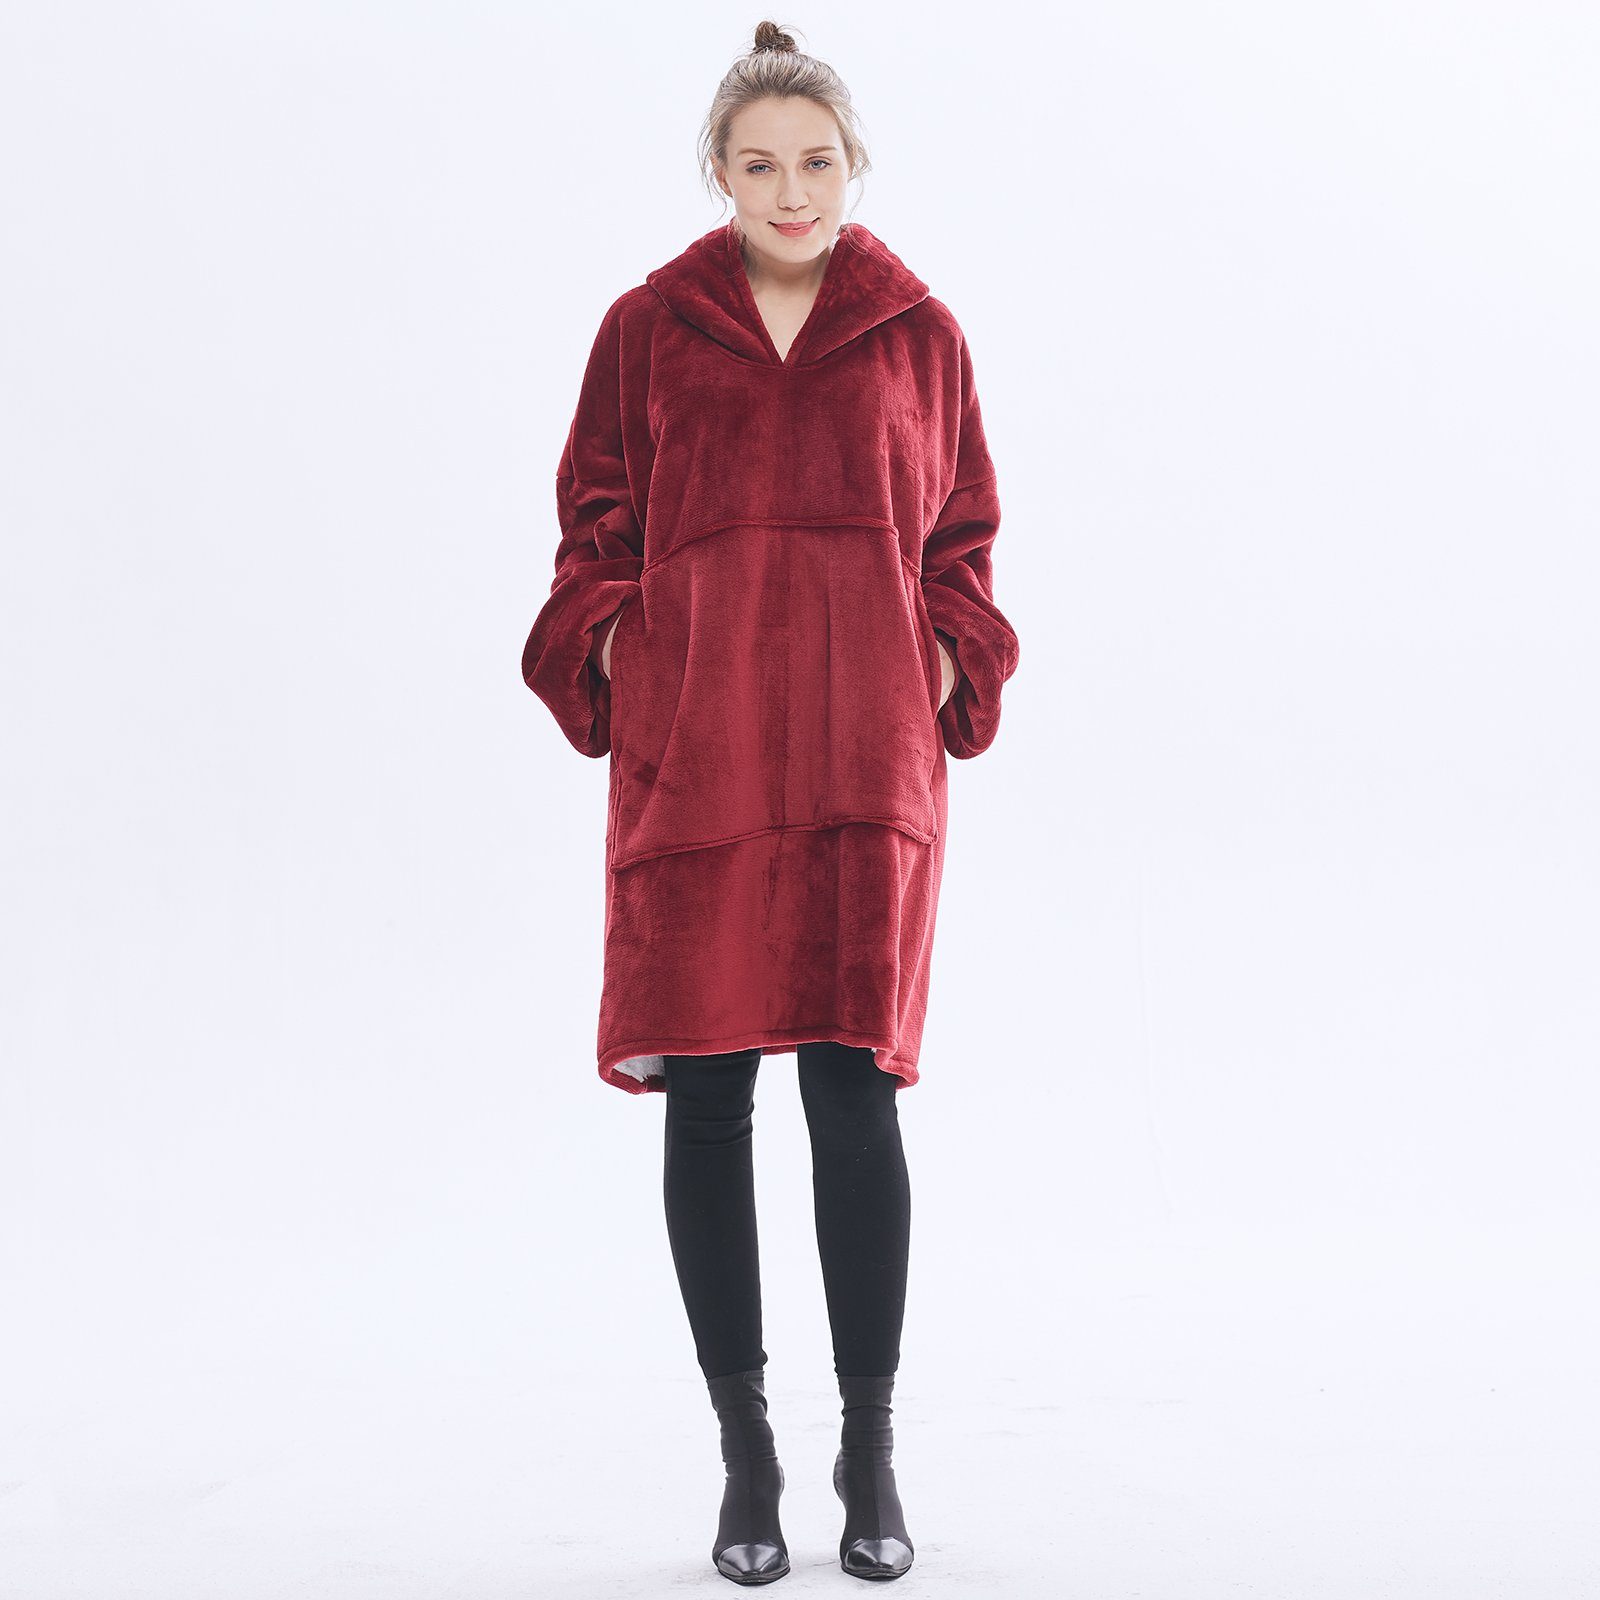 Wohndecke Übergroße Hoodie Fuzzy Blanket, Super weiche, Gemütliche warme, Sunicol, komfortable Riesen-Hoodie, Riesenpullover mit großer Fronttasche Rot